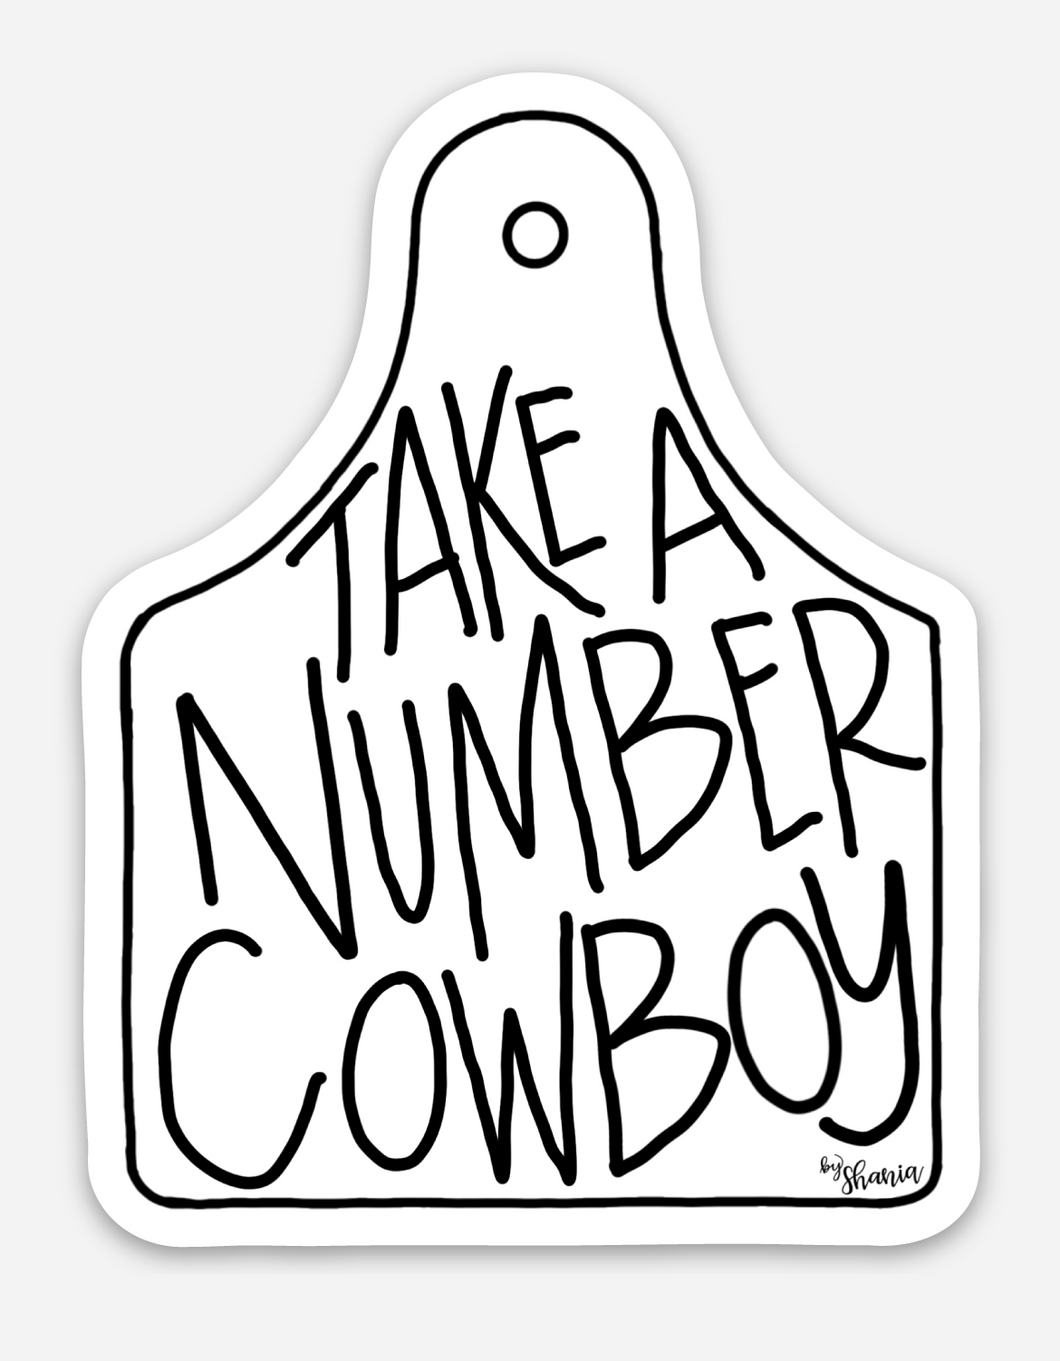 Take a # Cowboy